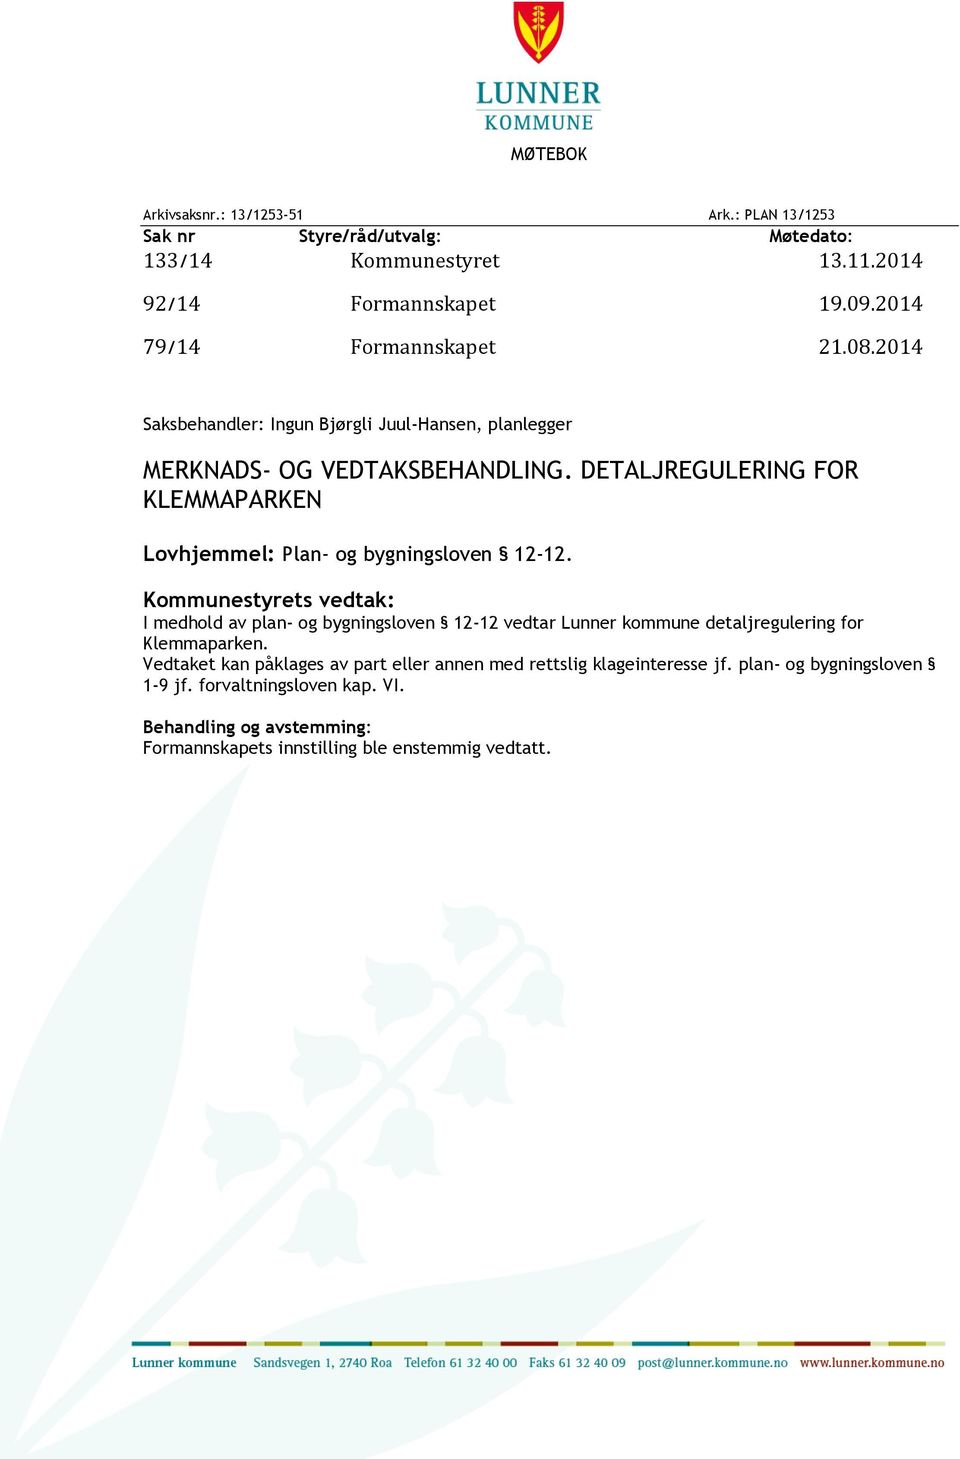 DETALJREGULERING FOR KLEMMAPARKEN Lovhjemmel: Plan- og bygningsloven 12-12.